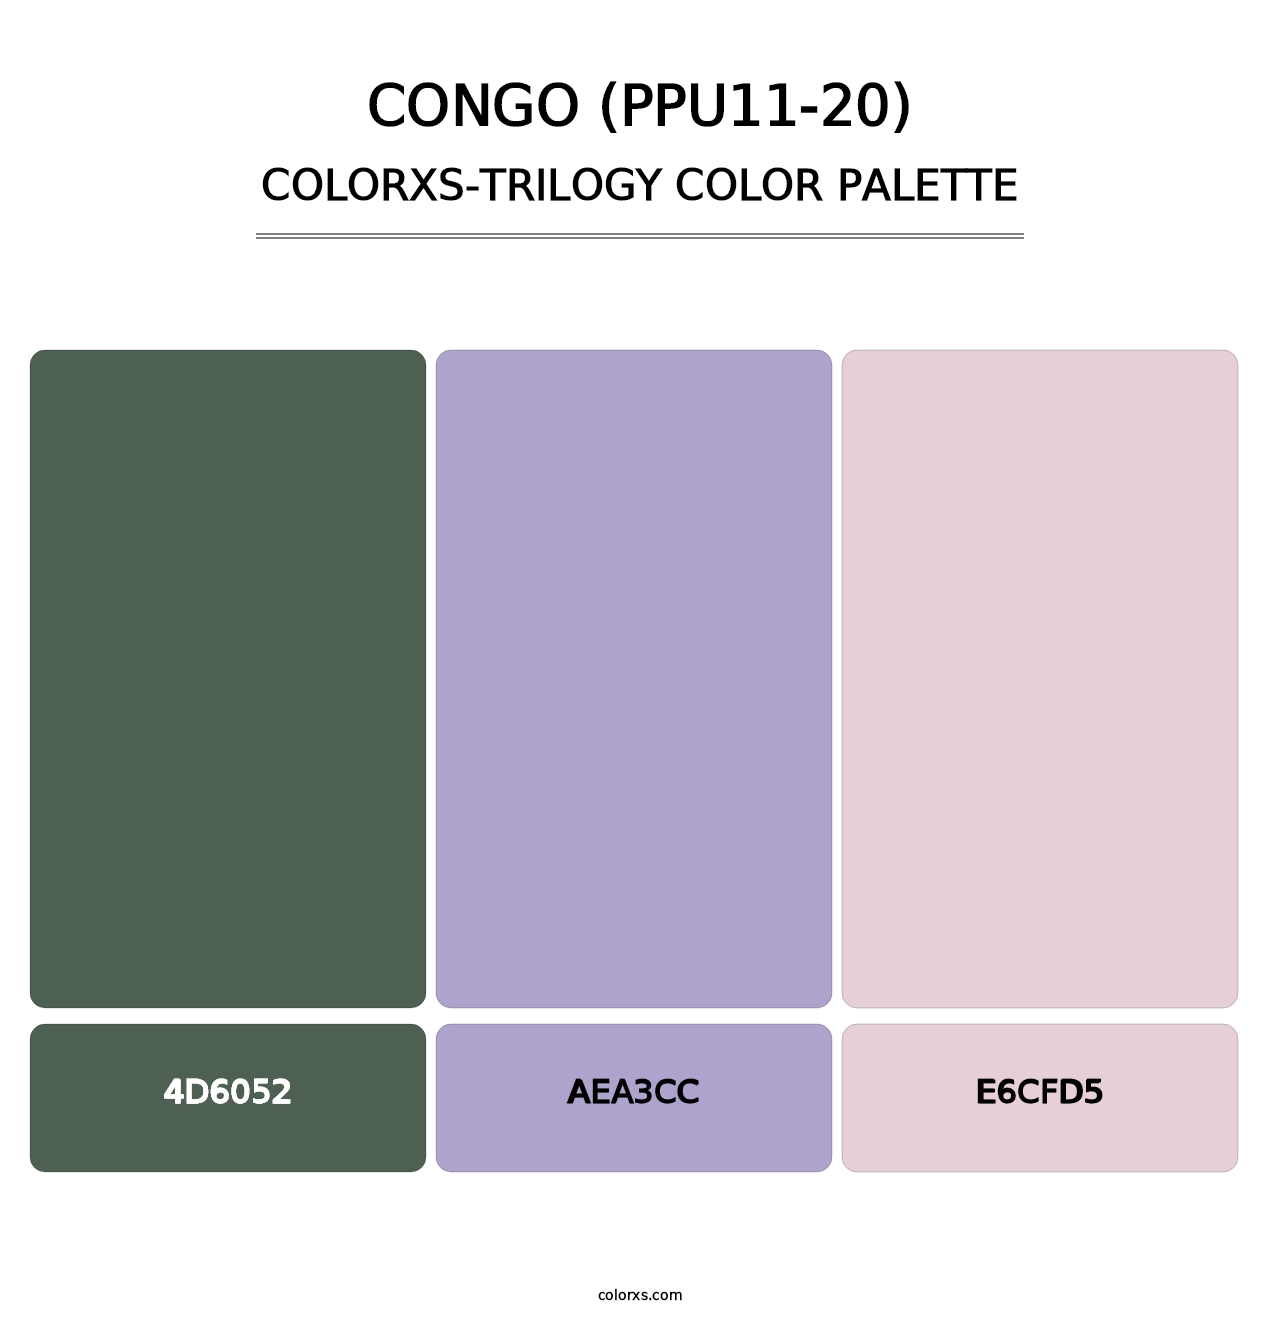 Congo (PPU11-20) - Colorxs Trilogy Palette